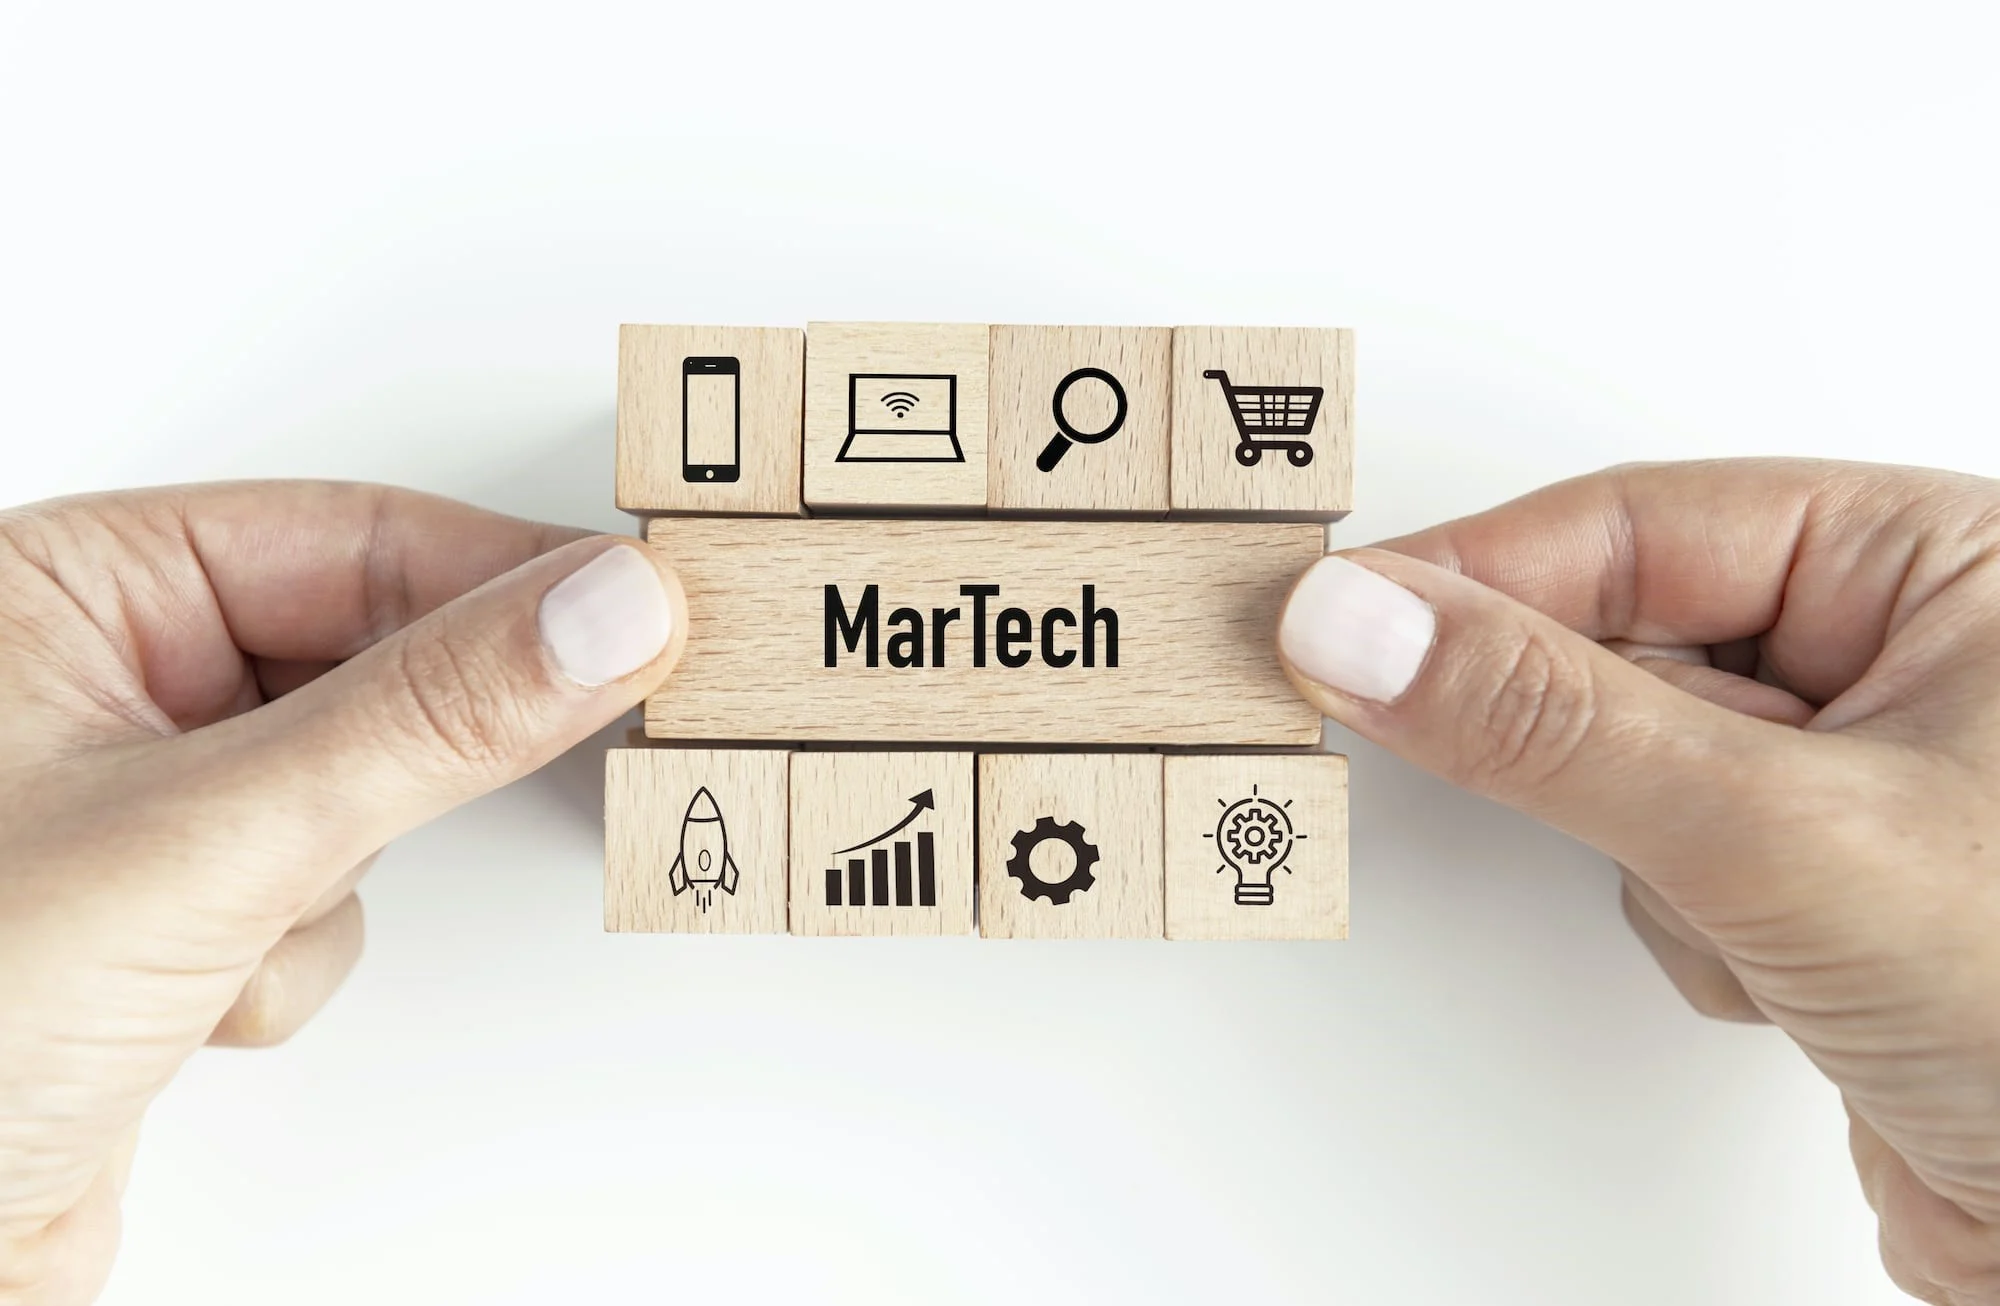 Martech, công nghệ tiếp thị, adtech, martech là gì